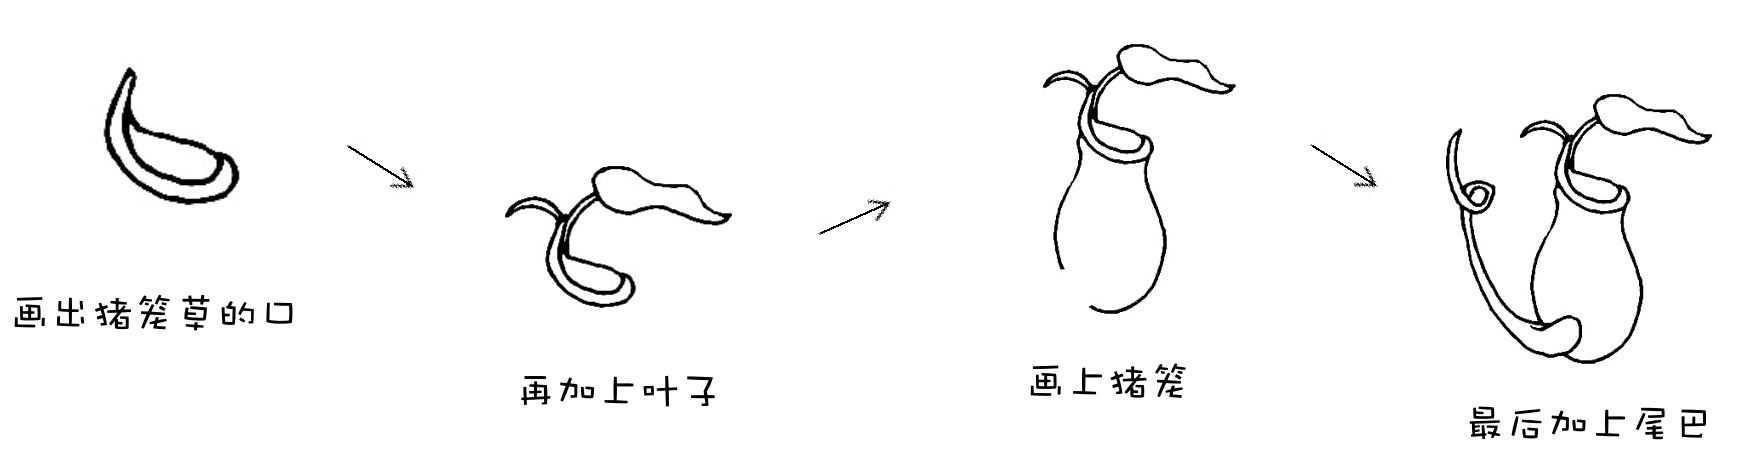 猪笼草简笔画,捕蝇草的简笔画(1)